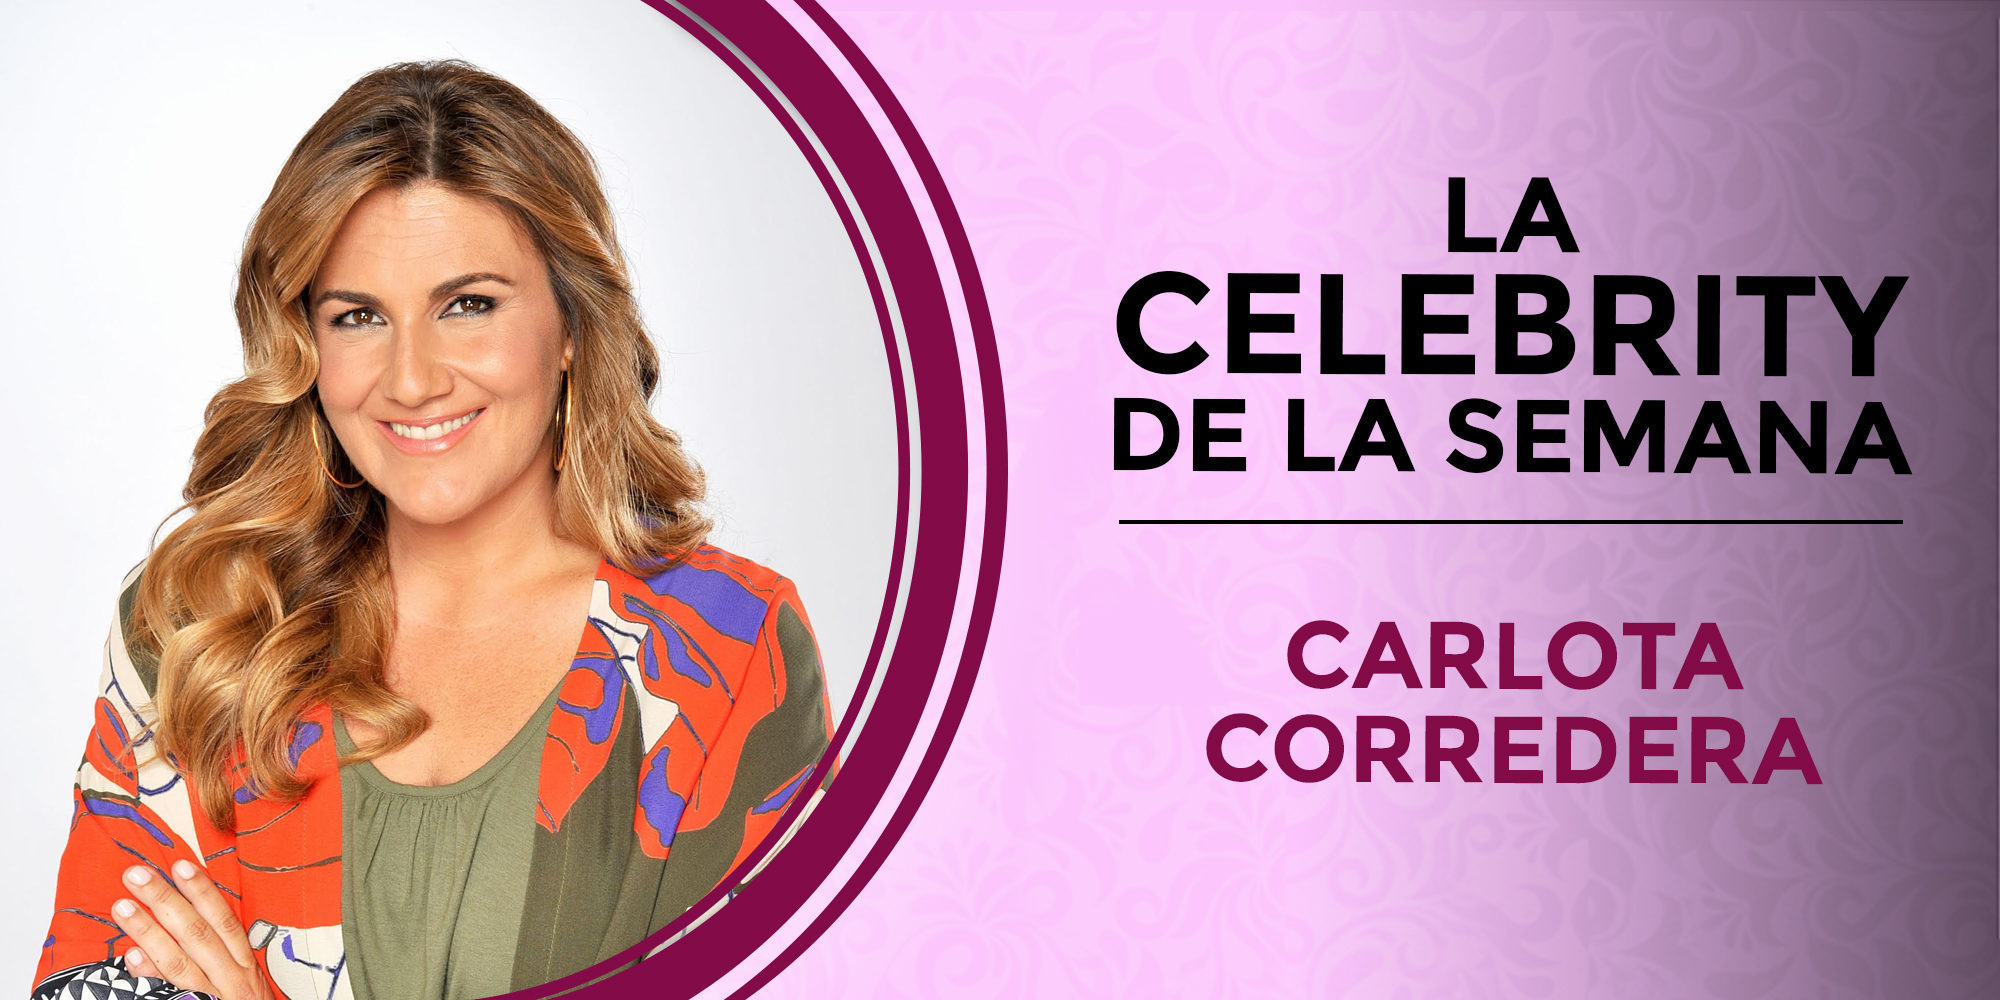 Carlota Corredera, la celebrity de la semana por su oda a la curva y la belleza natural